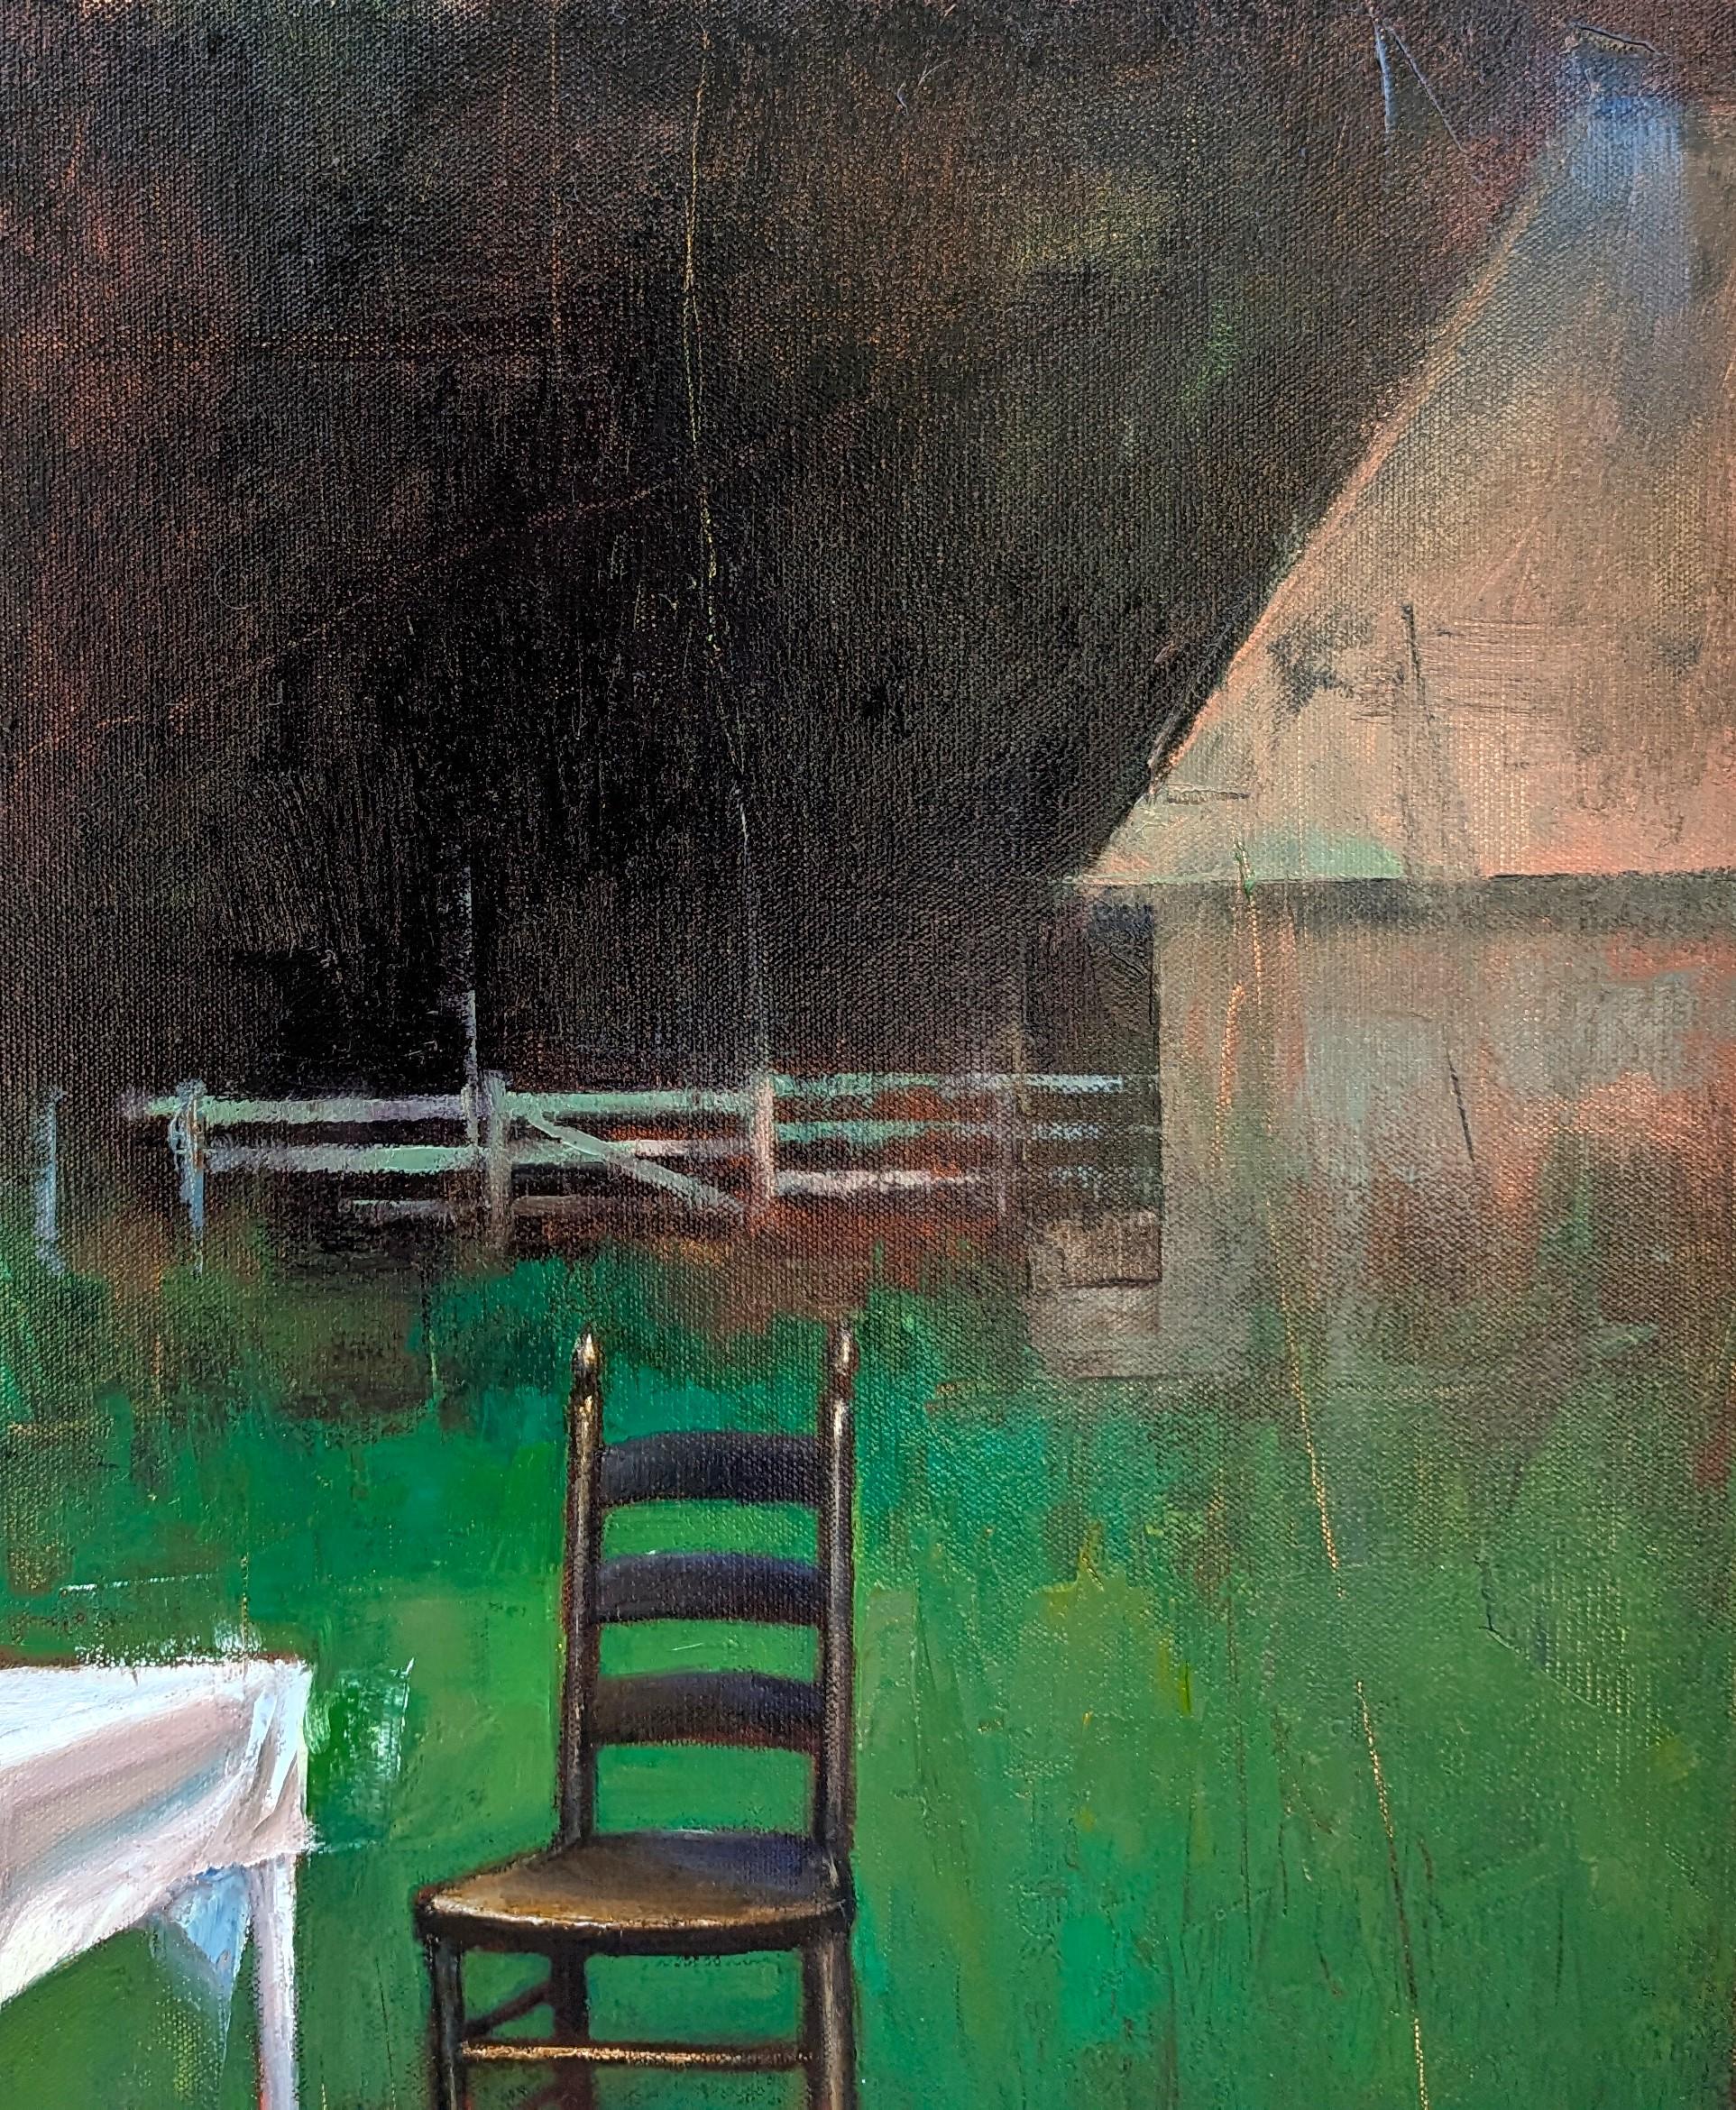 Peinture abstraite surréaliste de paysage de l'artiste contemporain Matthew Paoletti. L'œuvre présente un ensemble de bois de cerf placé sur une table au milieu d'un champ vert. Signé par l'artiste dans le coin inférieur droit du recto. Actuellement